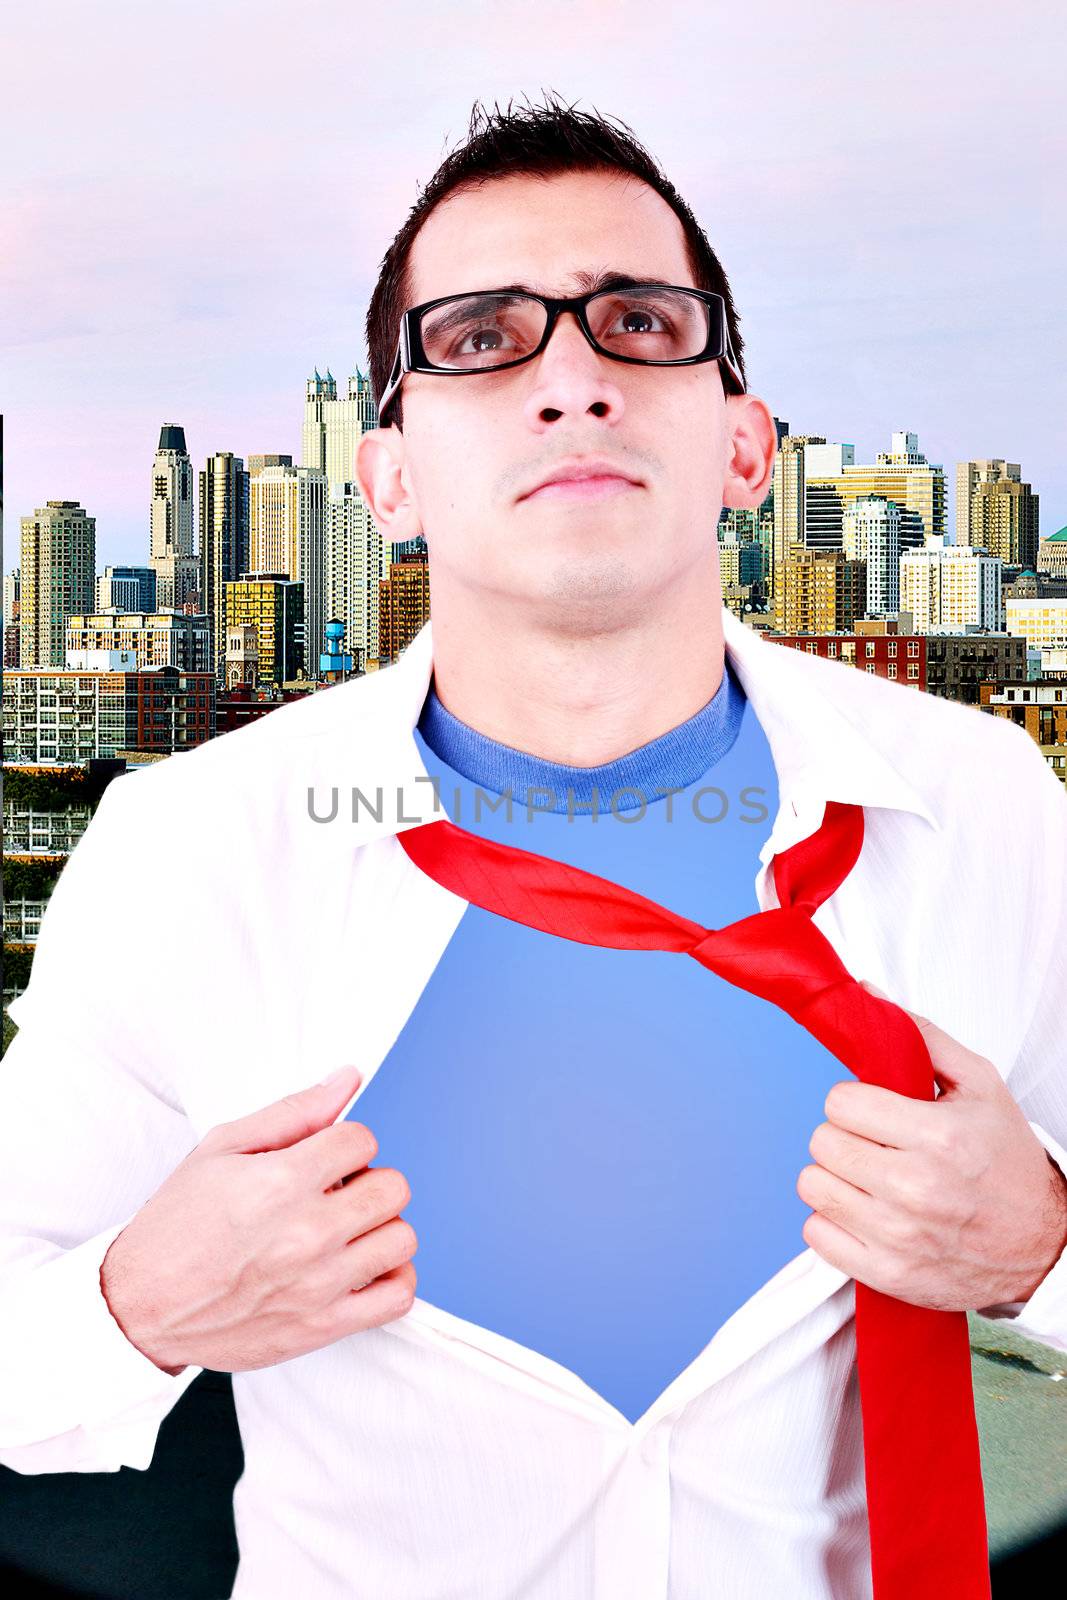 Stylized superhero businessman by dacasdo